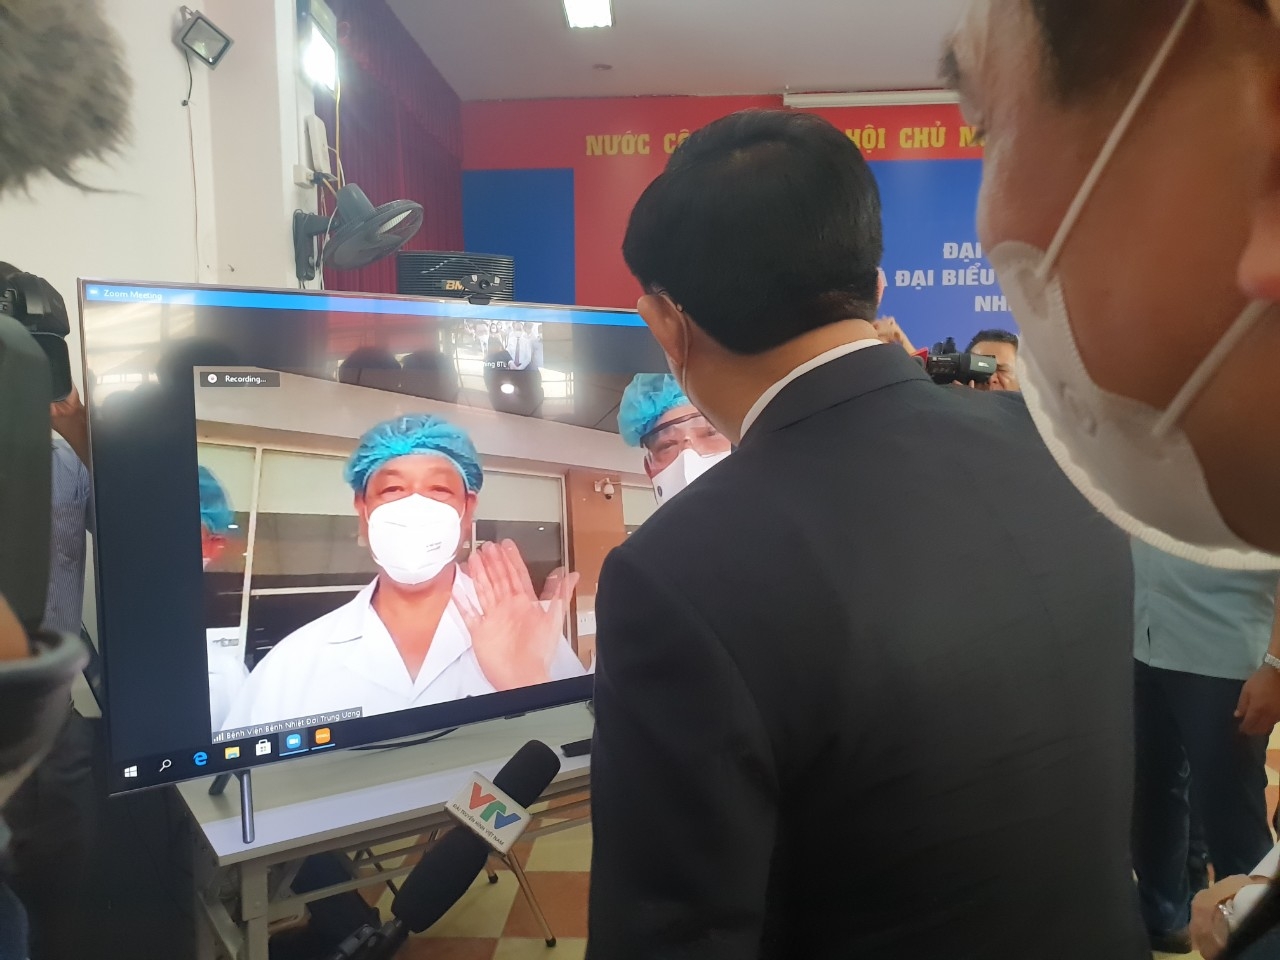 Xúc động hình ảnh CSGT Bắc Giang đứng nghiêm chào đoàn chi viện chống dịch  Covid-19